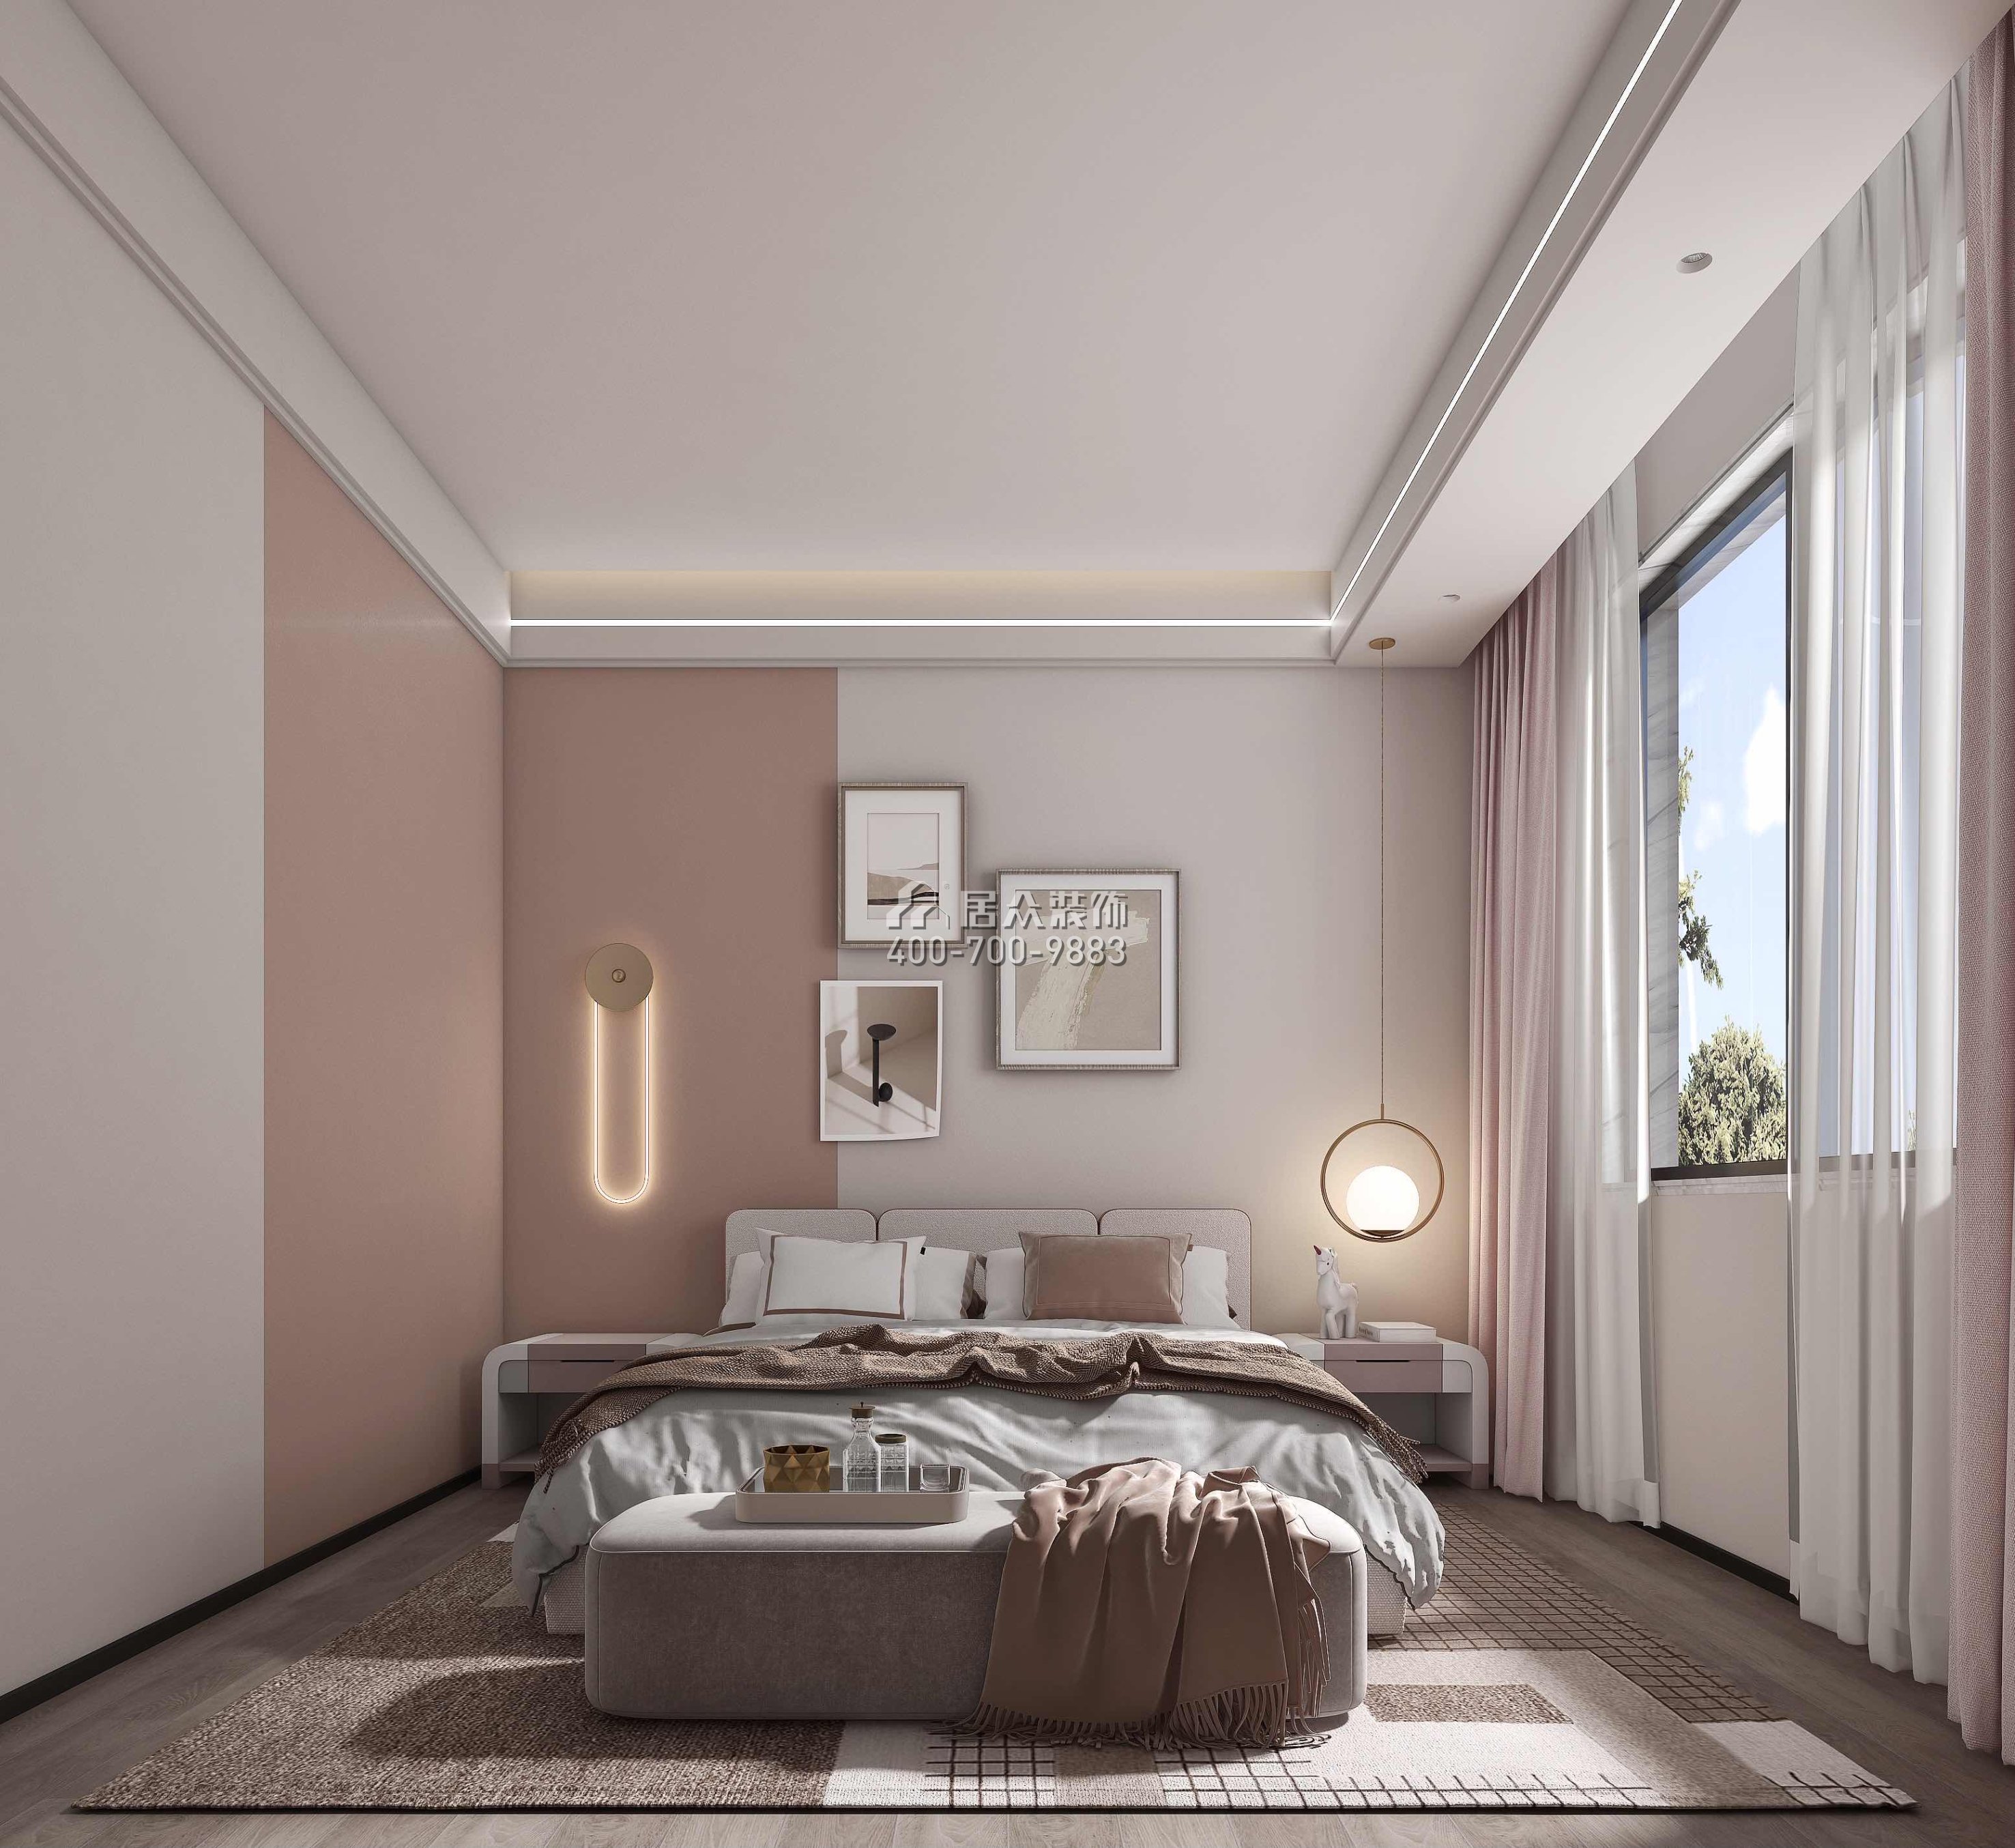 尚東紫御598平方米現代簡約風格別墅戶型臥室裝修效果圖